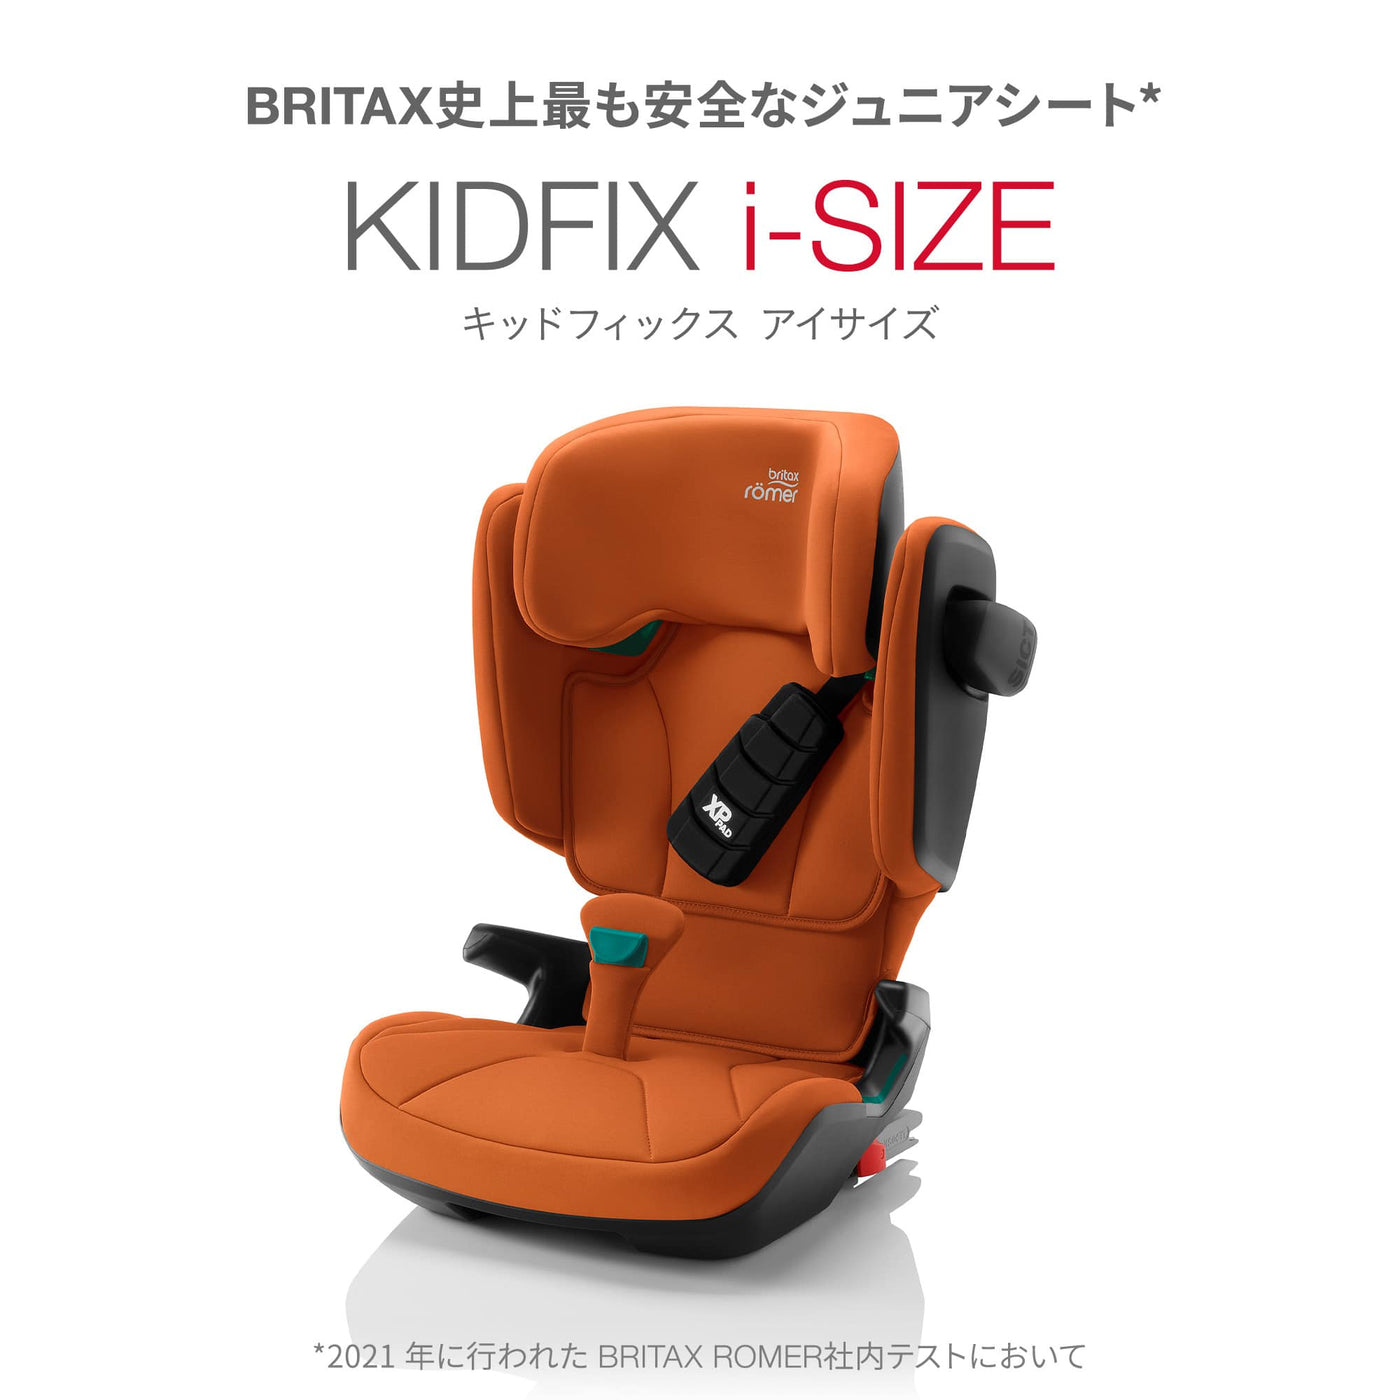 ブリタックスレーマー] KIDFIX I-SIZE キッドフィックス アイサイズ – blossom39 ONLINE SHOP